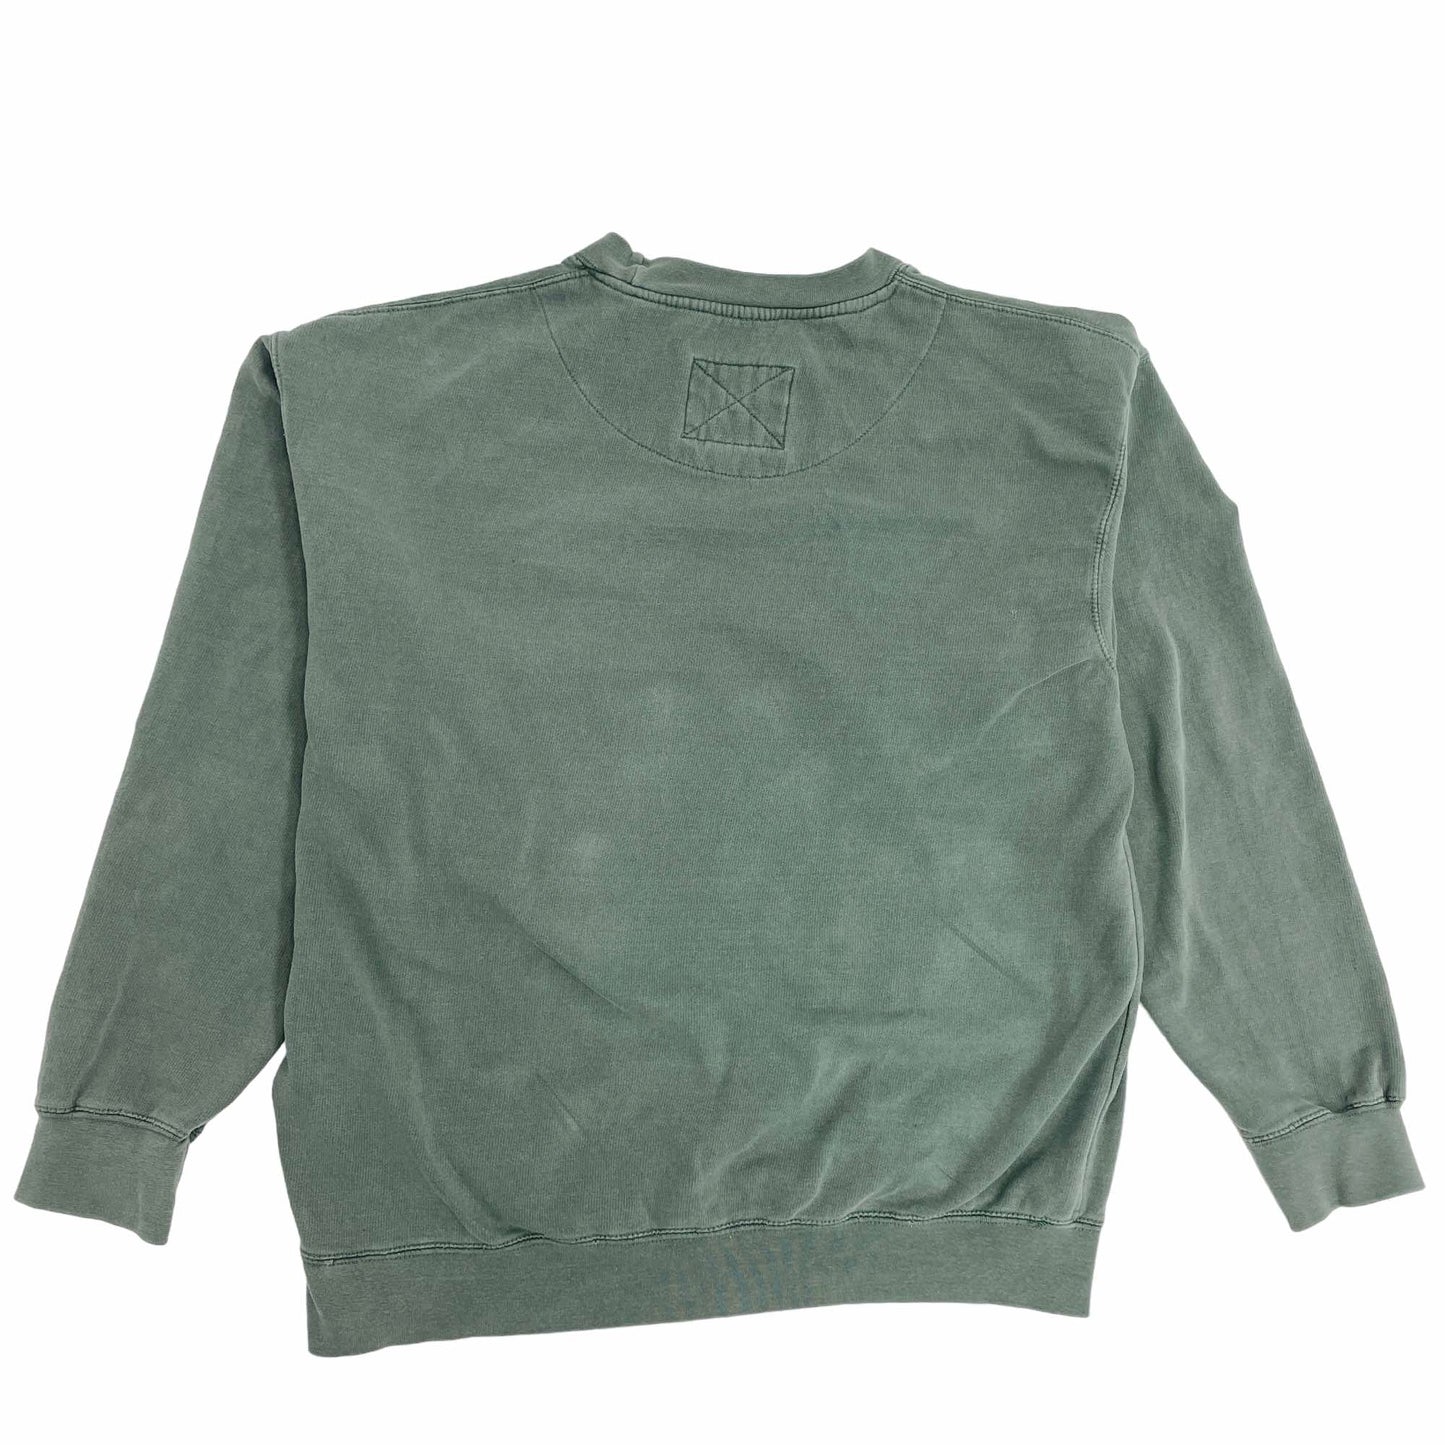 
                  
                    Cape May Sweatshirt - XL
                  
                